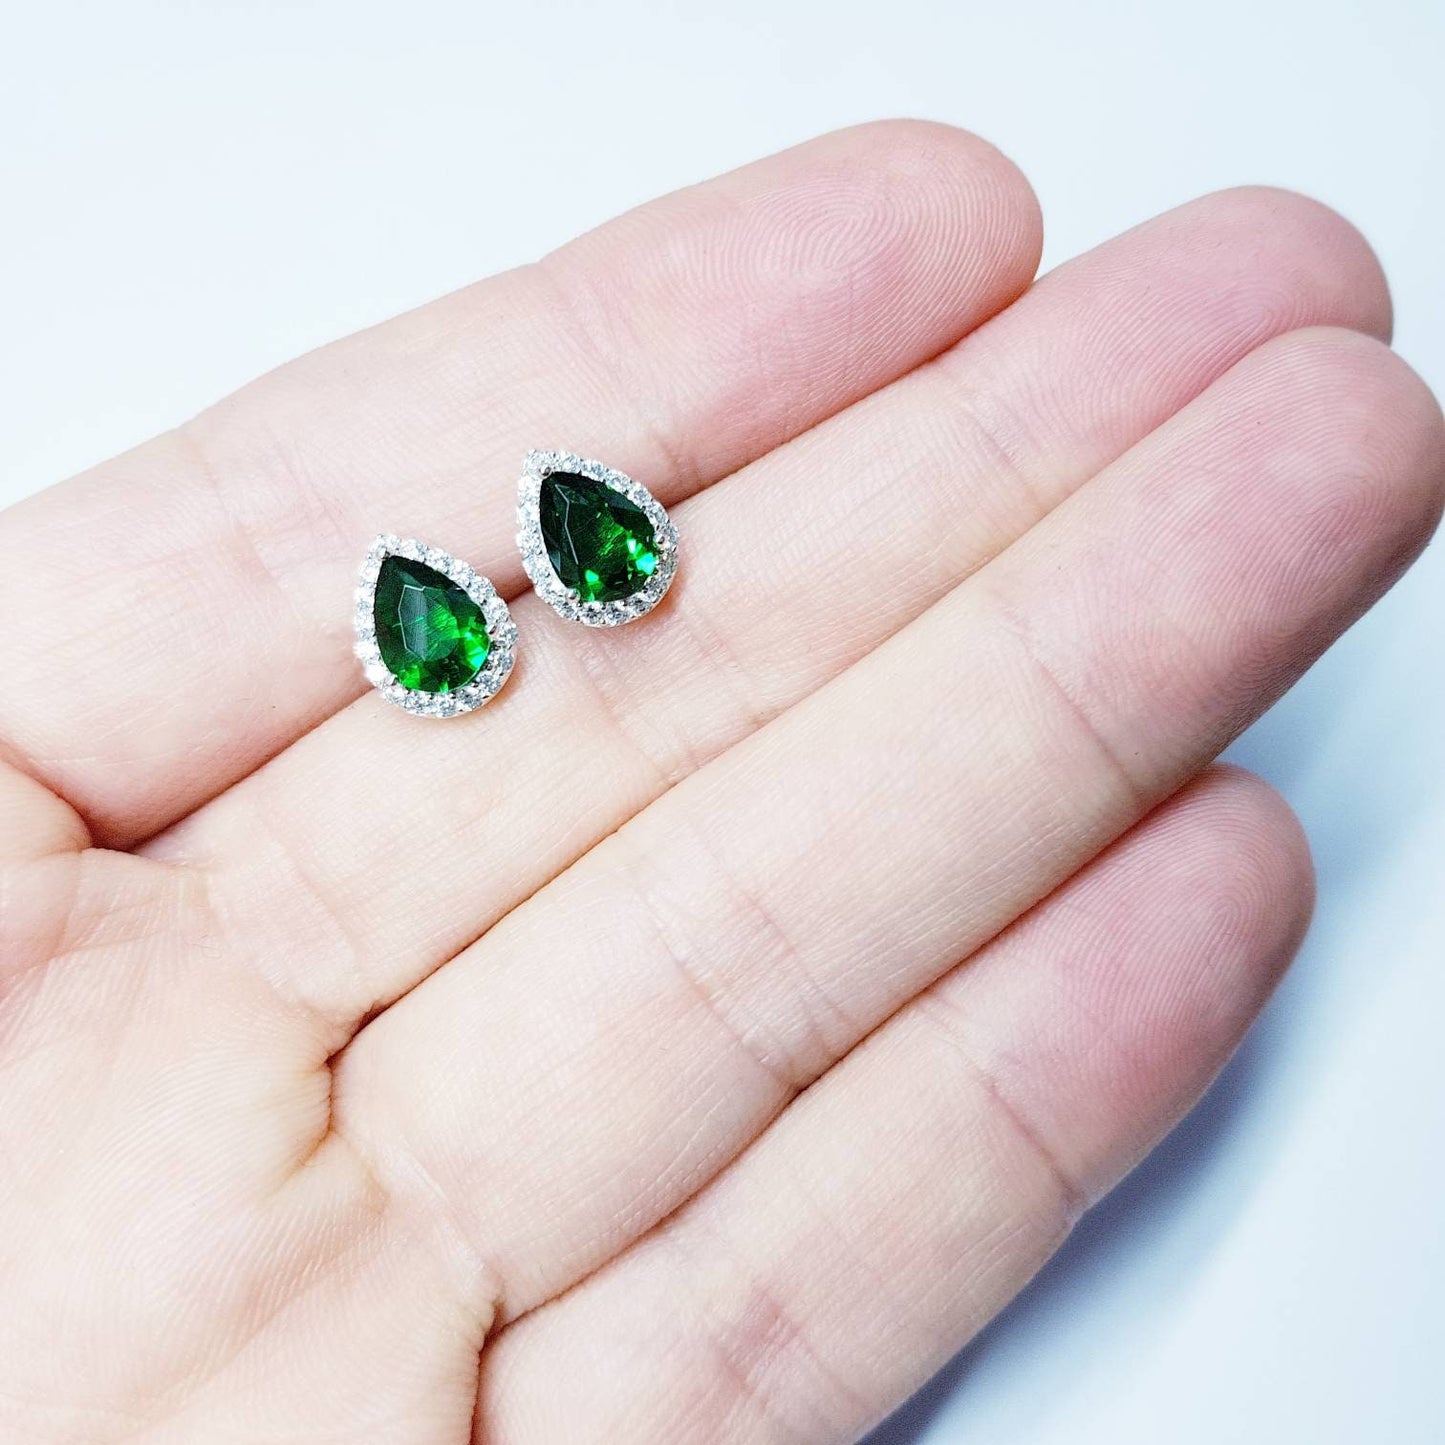 Emerald stud earrings, green earrings, green studs, diamond halo earrings, gifts for her, Green teardrop earrings